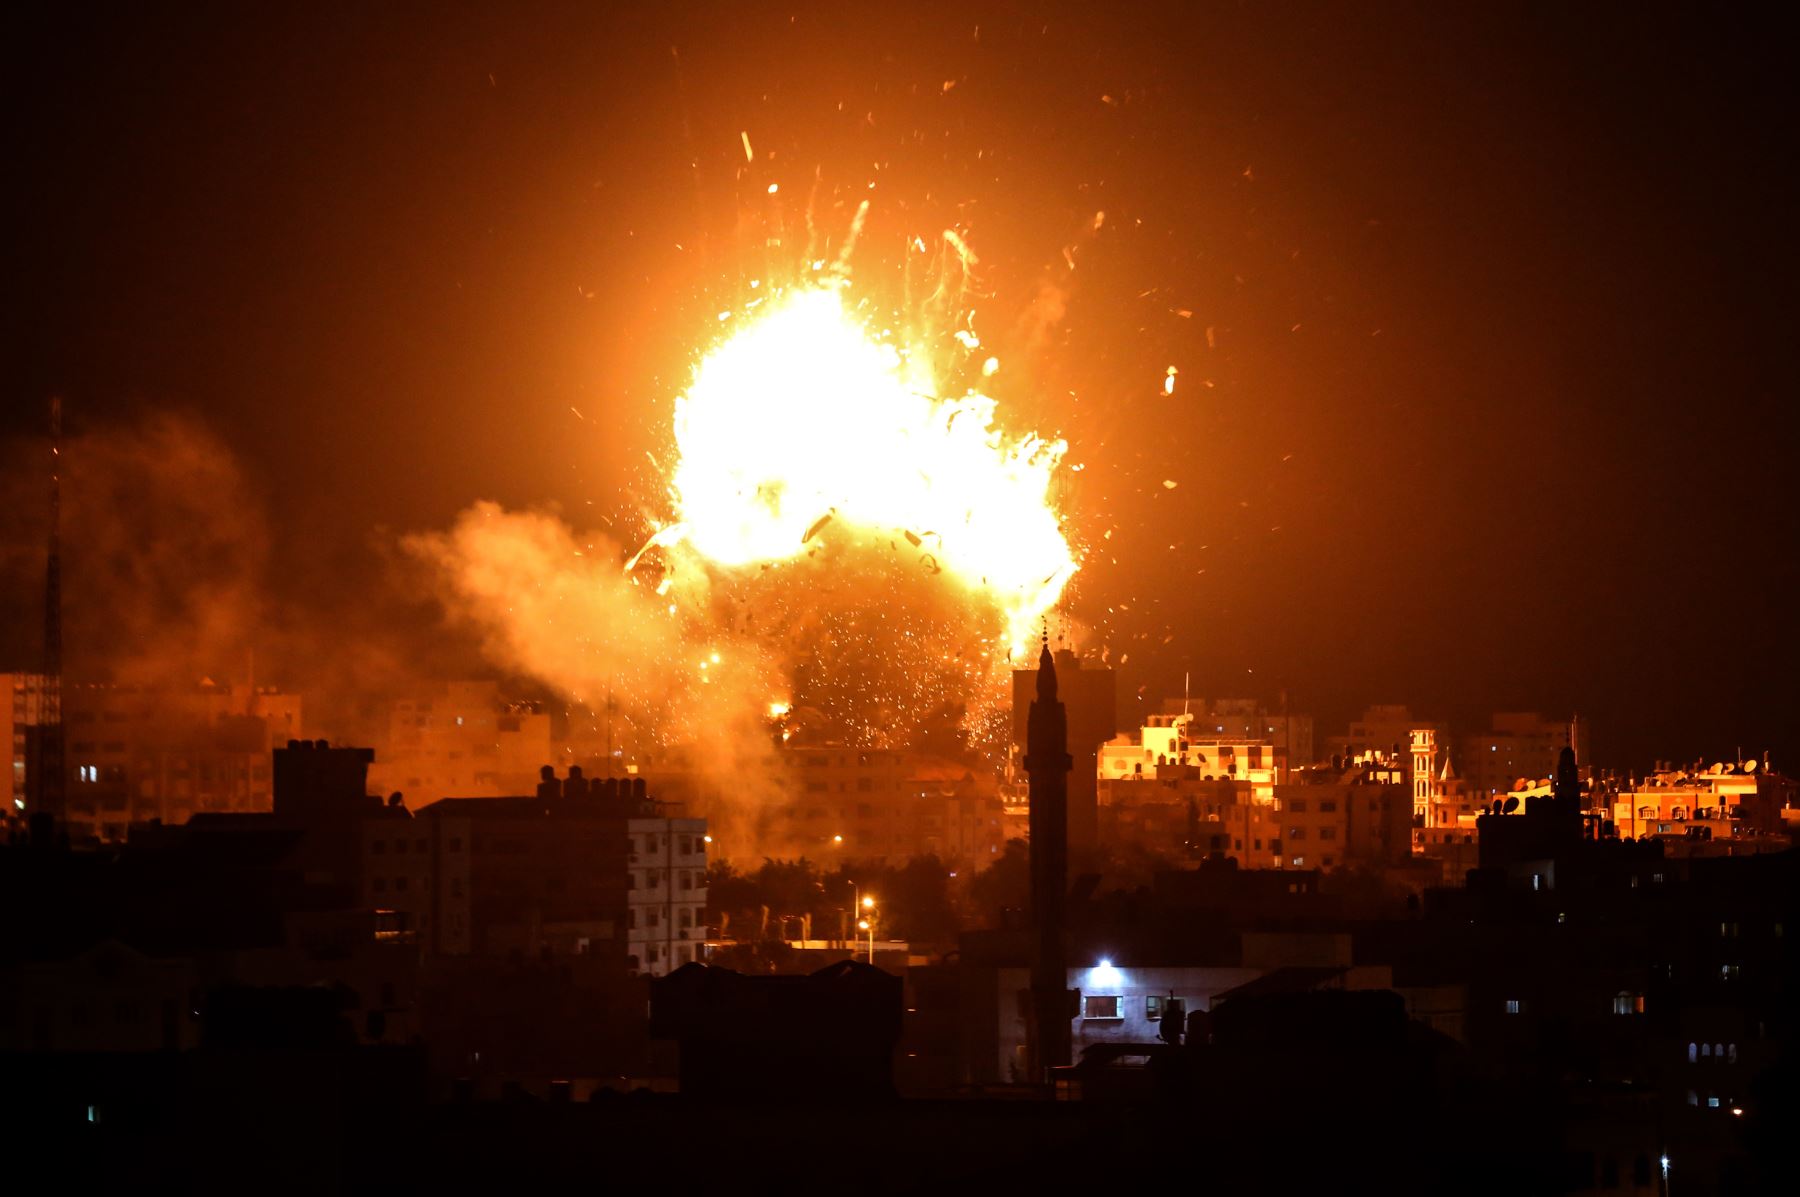 Una fotografía muestra una bola de fuego sobre el edificio que alberga la estación de televisión dirigida por Hamas al-Aqsa TV en la ciudad de Gaza durante un ataque aéreo israelí. - El ejército de Israel dijo que estaba llevando a cabo ataques aéreos "a lo largo de la Franja de Gaza" después del lanzamiento de cohetes desde el enclave palestino hacia su territorio. AFP